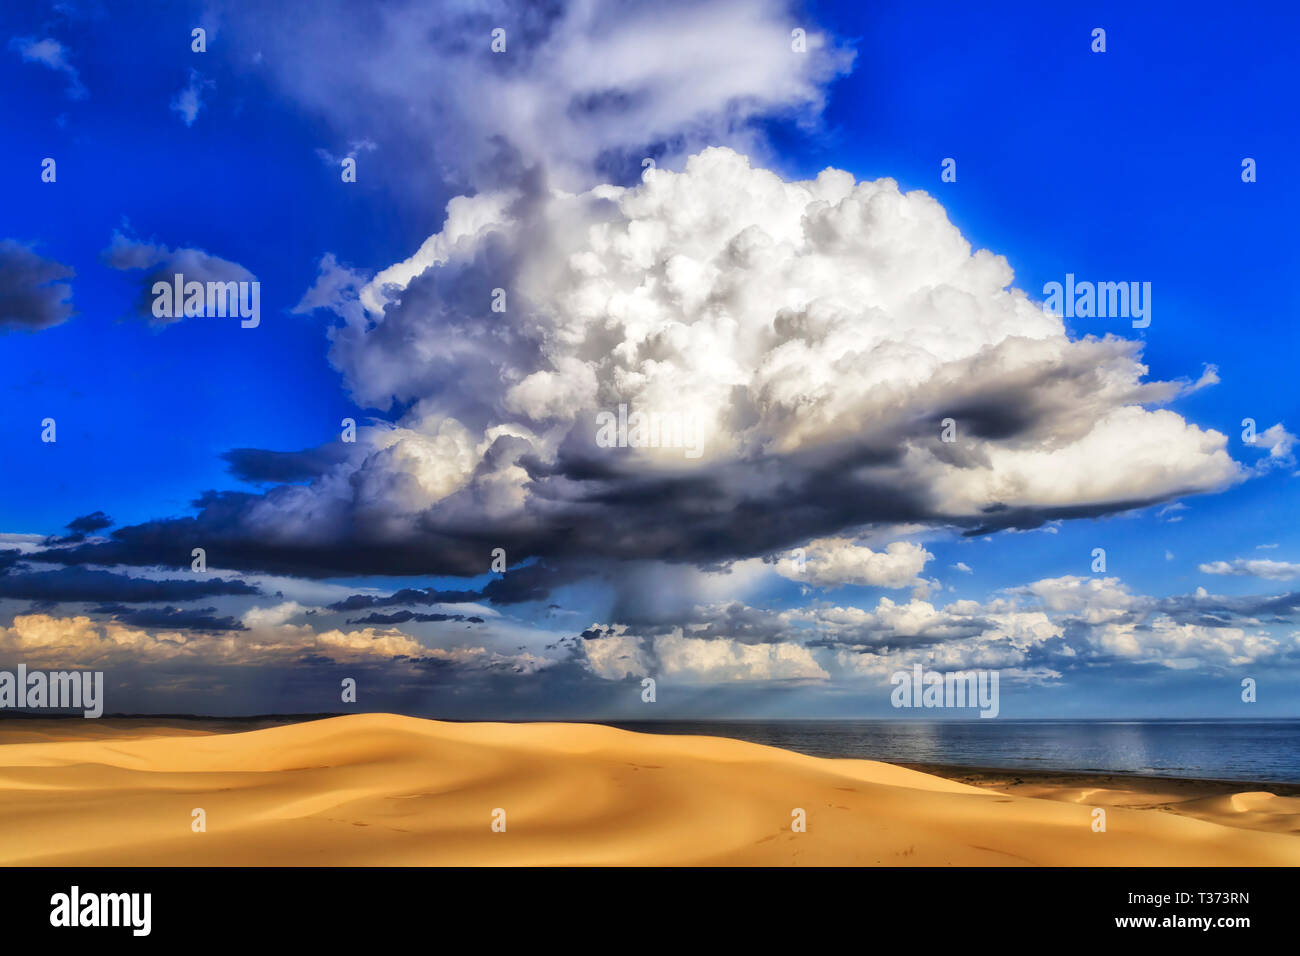 Turtle wie geformte stürmischen regen Cloud über Sanddünen an der Pazifikküste von Australien im blauen Himmel fällt Regen Stockton Strand menschenleer zu Dürren. Stockfoto